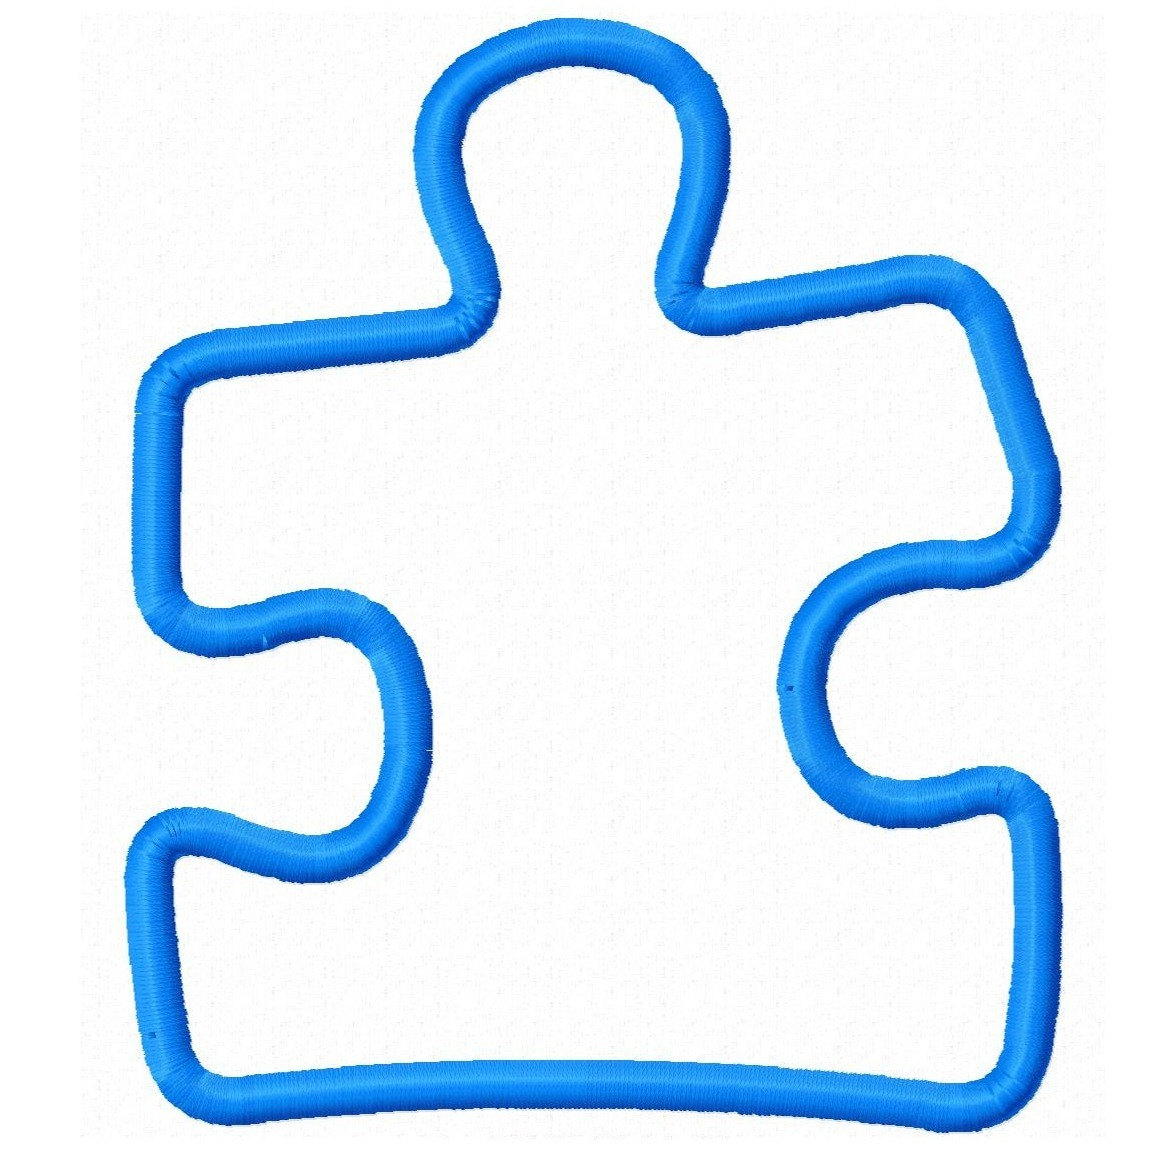 Puzzle Piece Clipart | Free Download Best Puzzle Piece Clipart On - Printable Puzzle Piece Autism